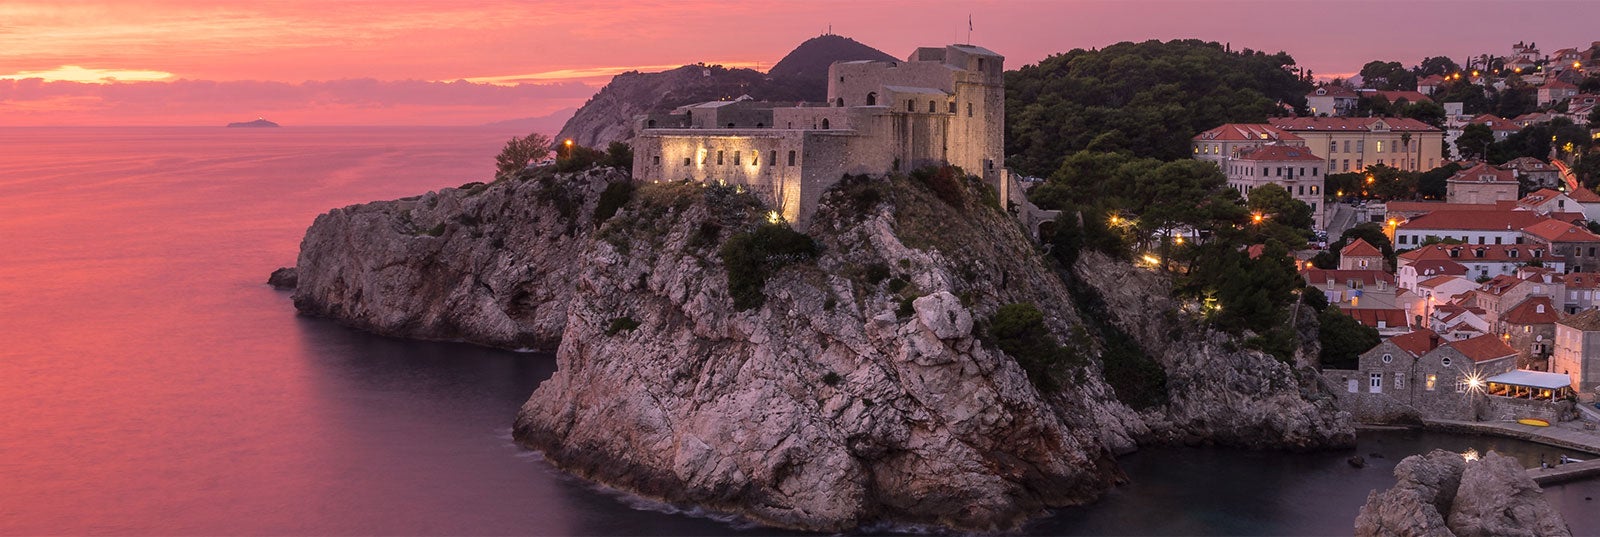 Guía turística de Dubrovnik